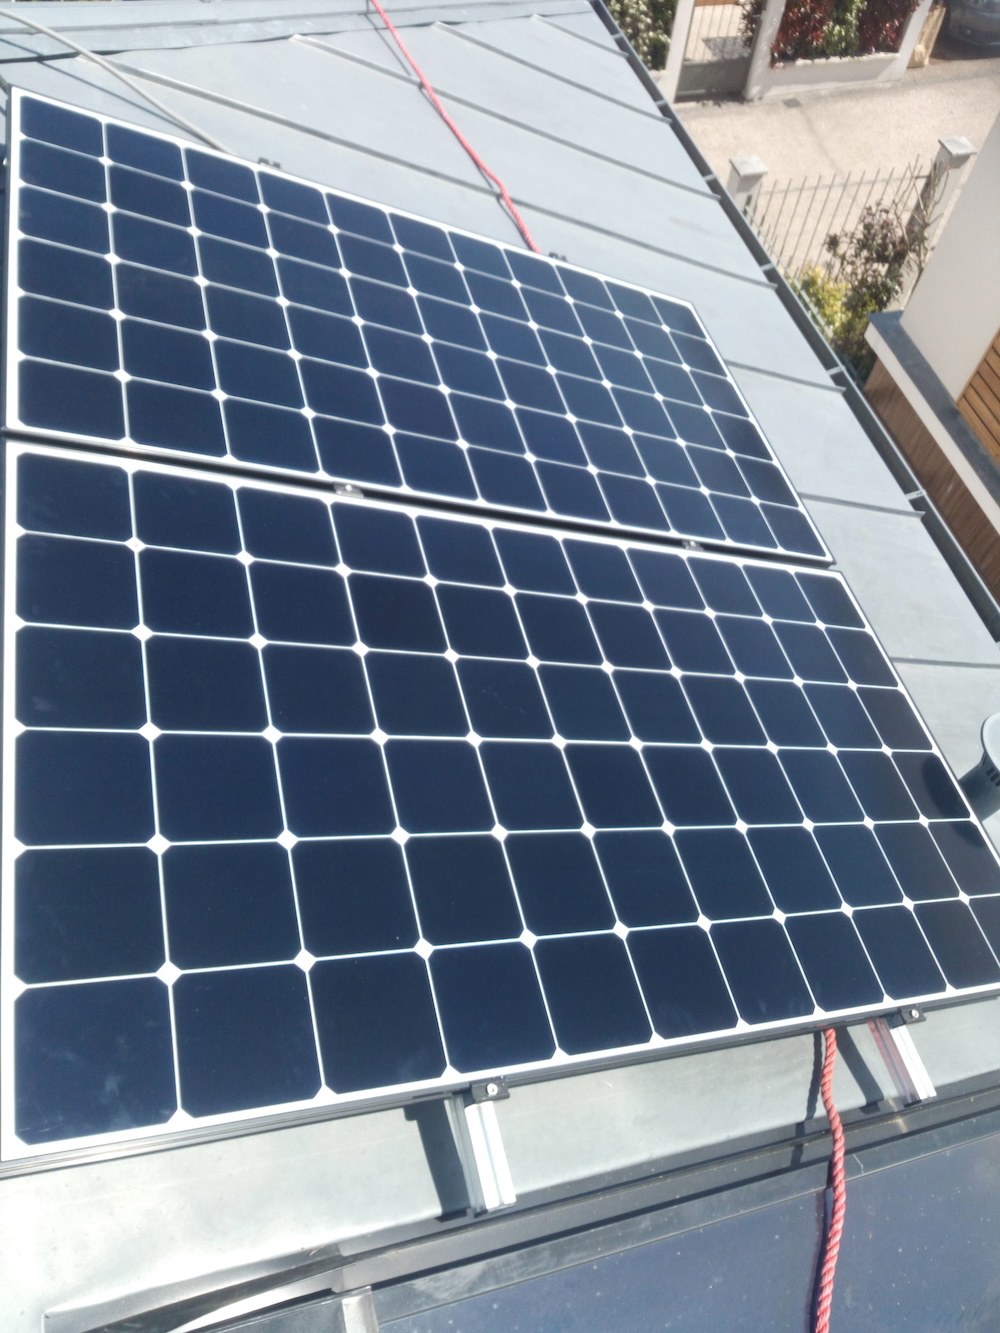 <span class="popup-mms-3">Installations de panneaux solaires sur toiture inclinée - 800W</span>